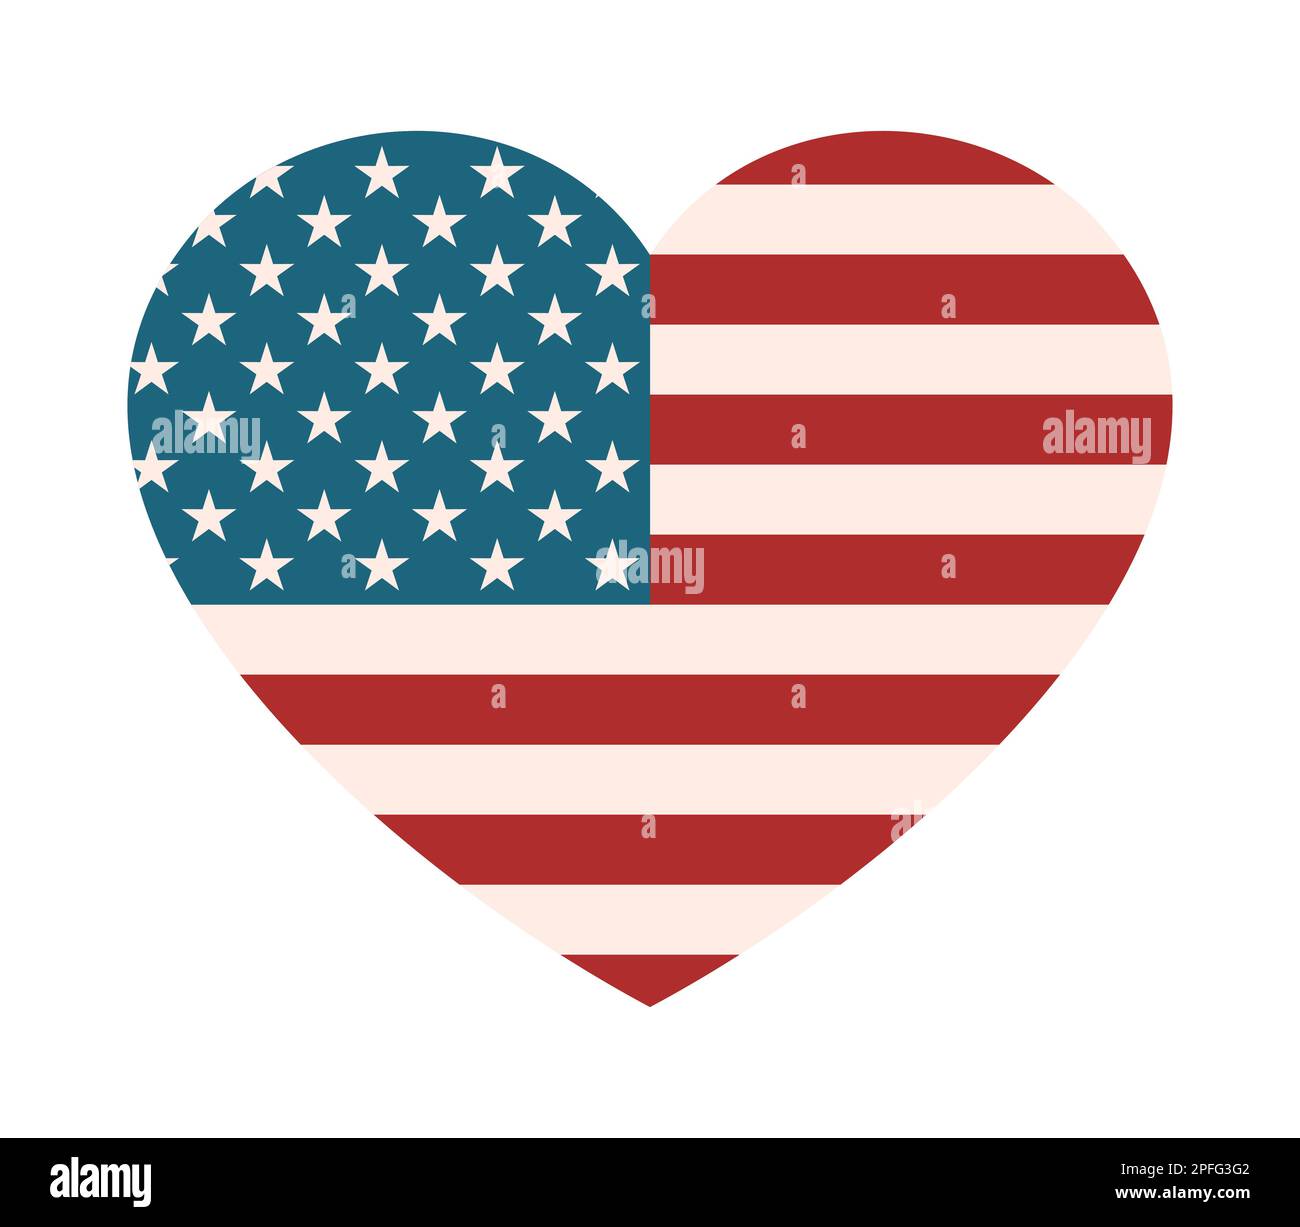 Amerikanische Flagge in Herzform. Ich liebe das USA-Konzept. Vintage-Farben. Patriotische Emotionen gegenüber Amerika. Nationalstolz-Emblem. Positives Gefühl zum Feiern Stock Vektor